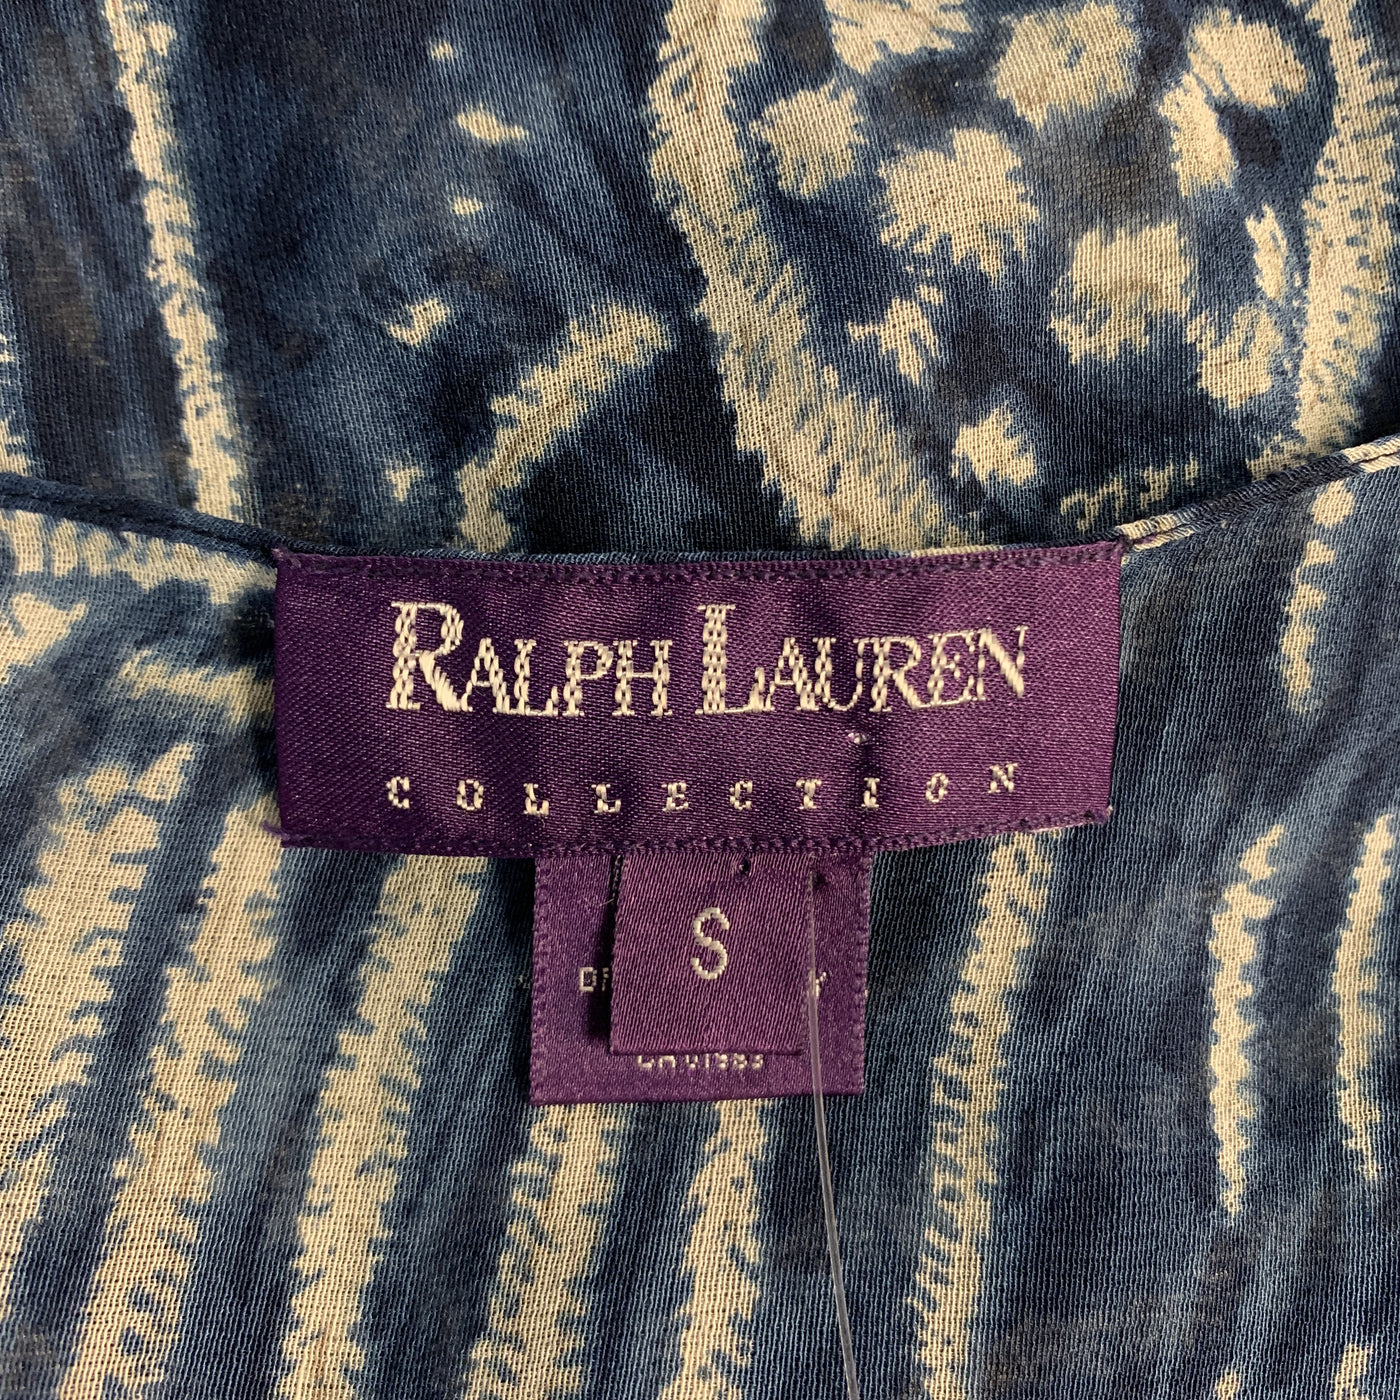 RALPH LAUREN Size S Blue Abstract Silk Strapless Blouse